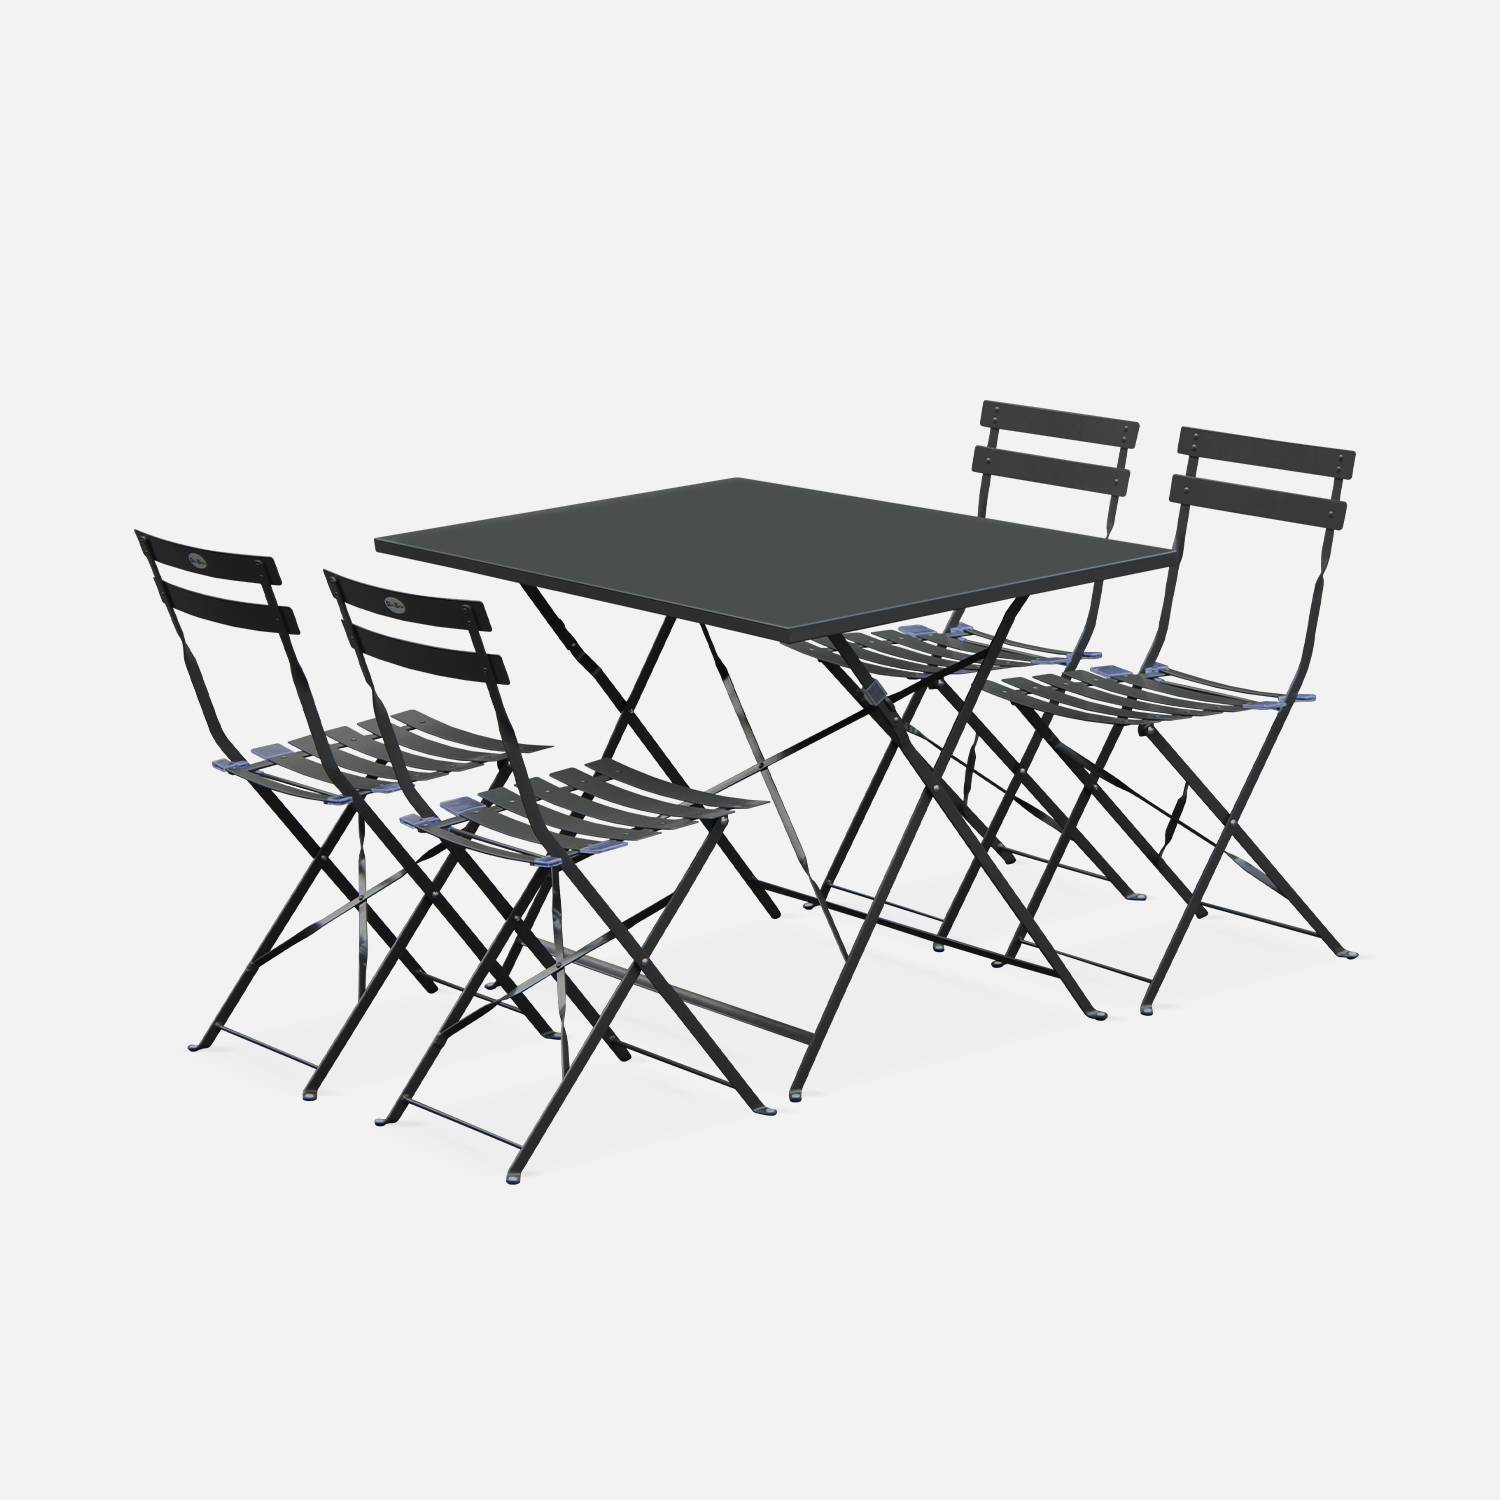 Tavolo da giardino, bar bistrot, pieghevole - modello: Emilia, rettangolare, colore: Antracite - Tavolo, dimensioni: 110x70cm, con quattro sedie pieghevoli, acciaio termolaccato Photo2